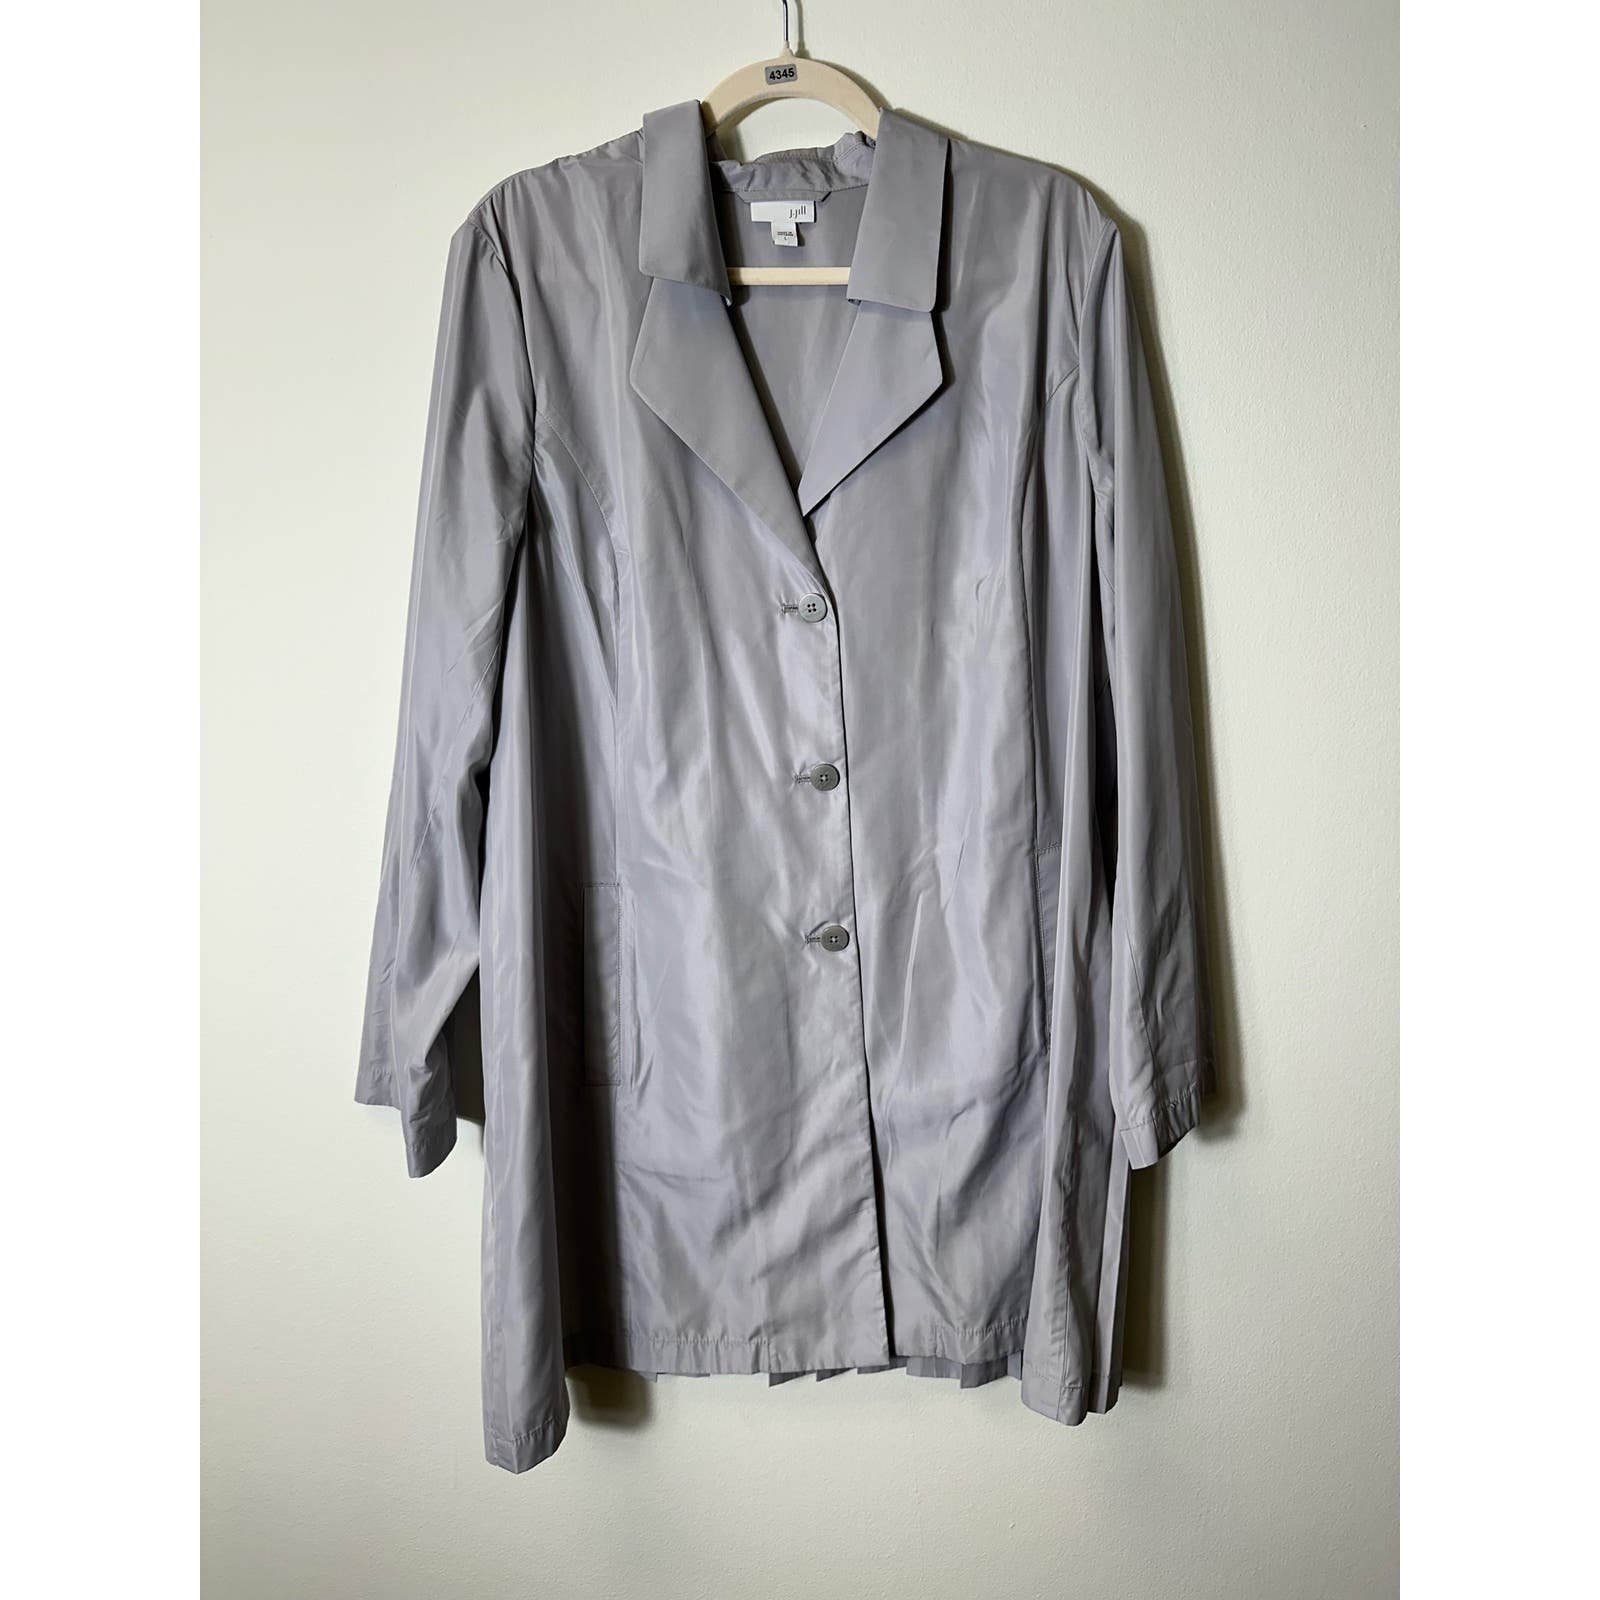 Popular J. Jill Light Gray Pleated Back Long Blazer Coat Sz L isU8TsMwf outlet online shop